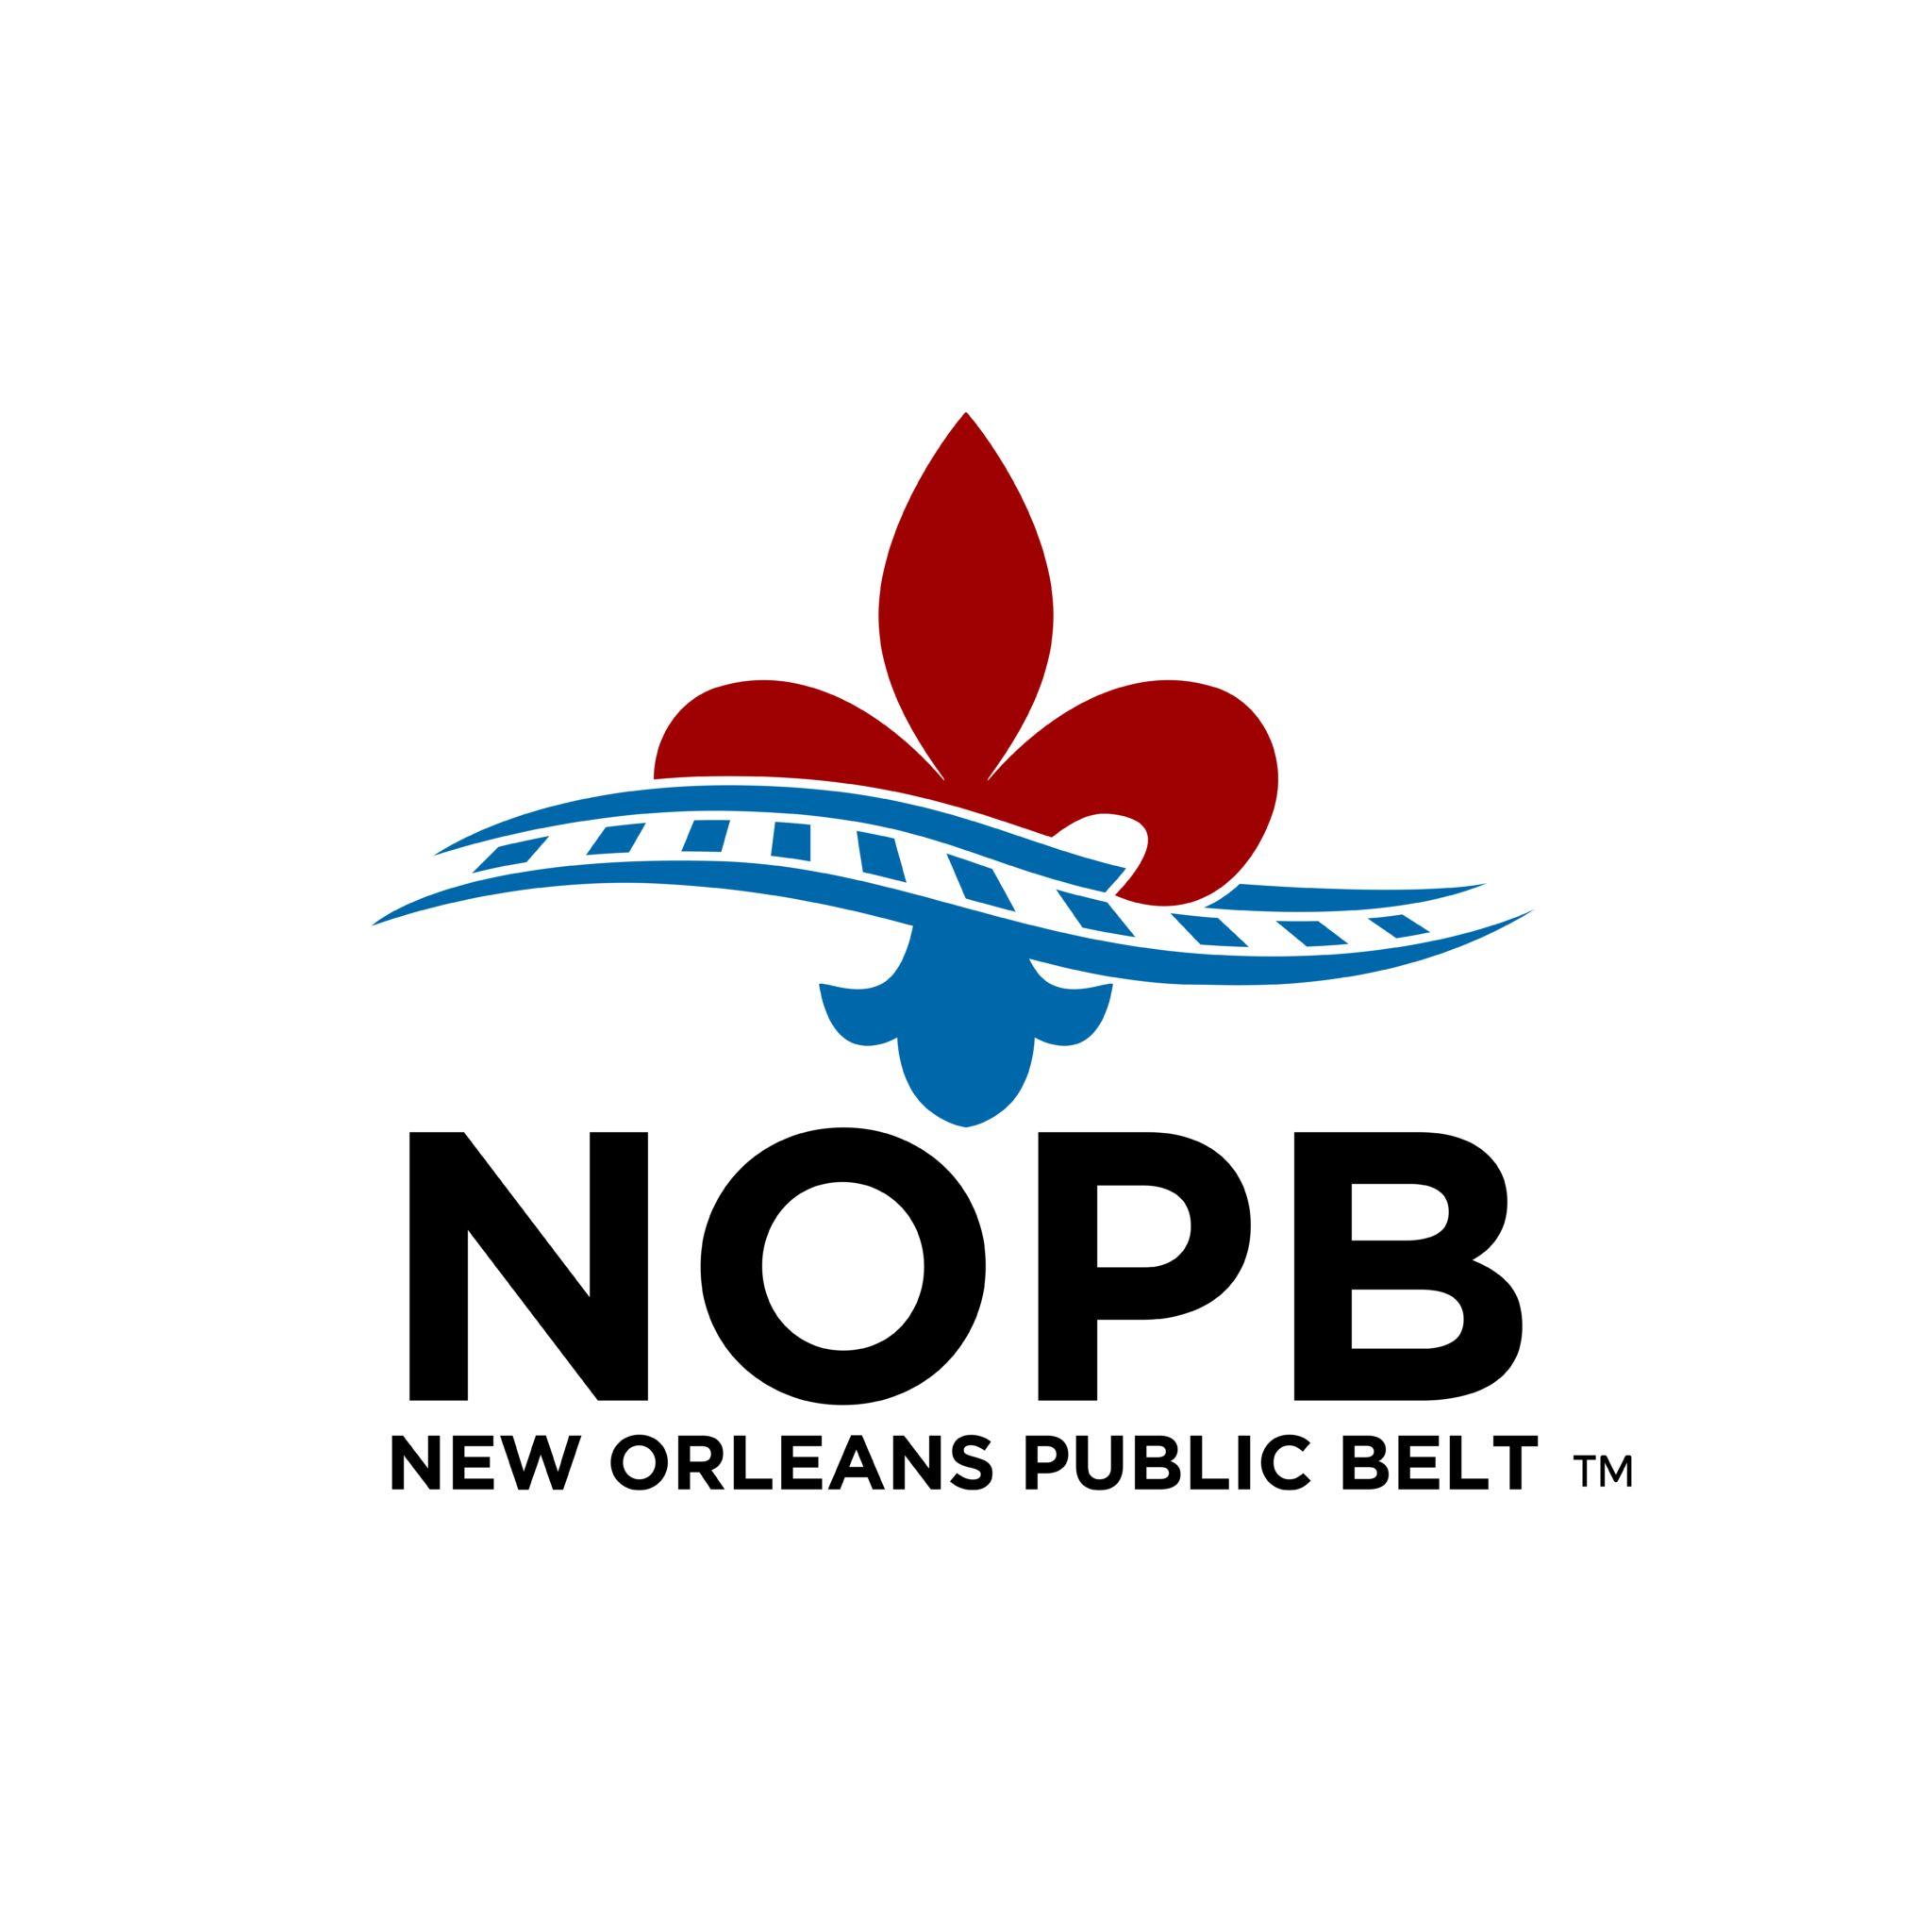 Orleans Logo - Port NOLA | New Orleans Public Belt Railroad Unveils New Logo